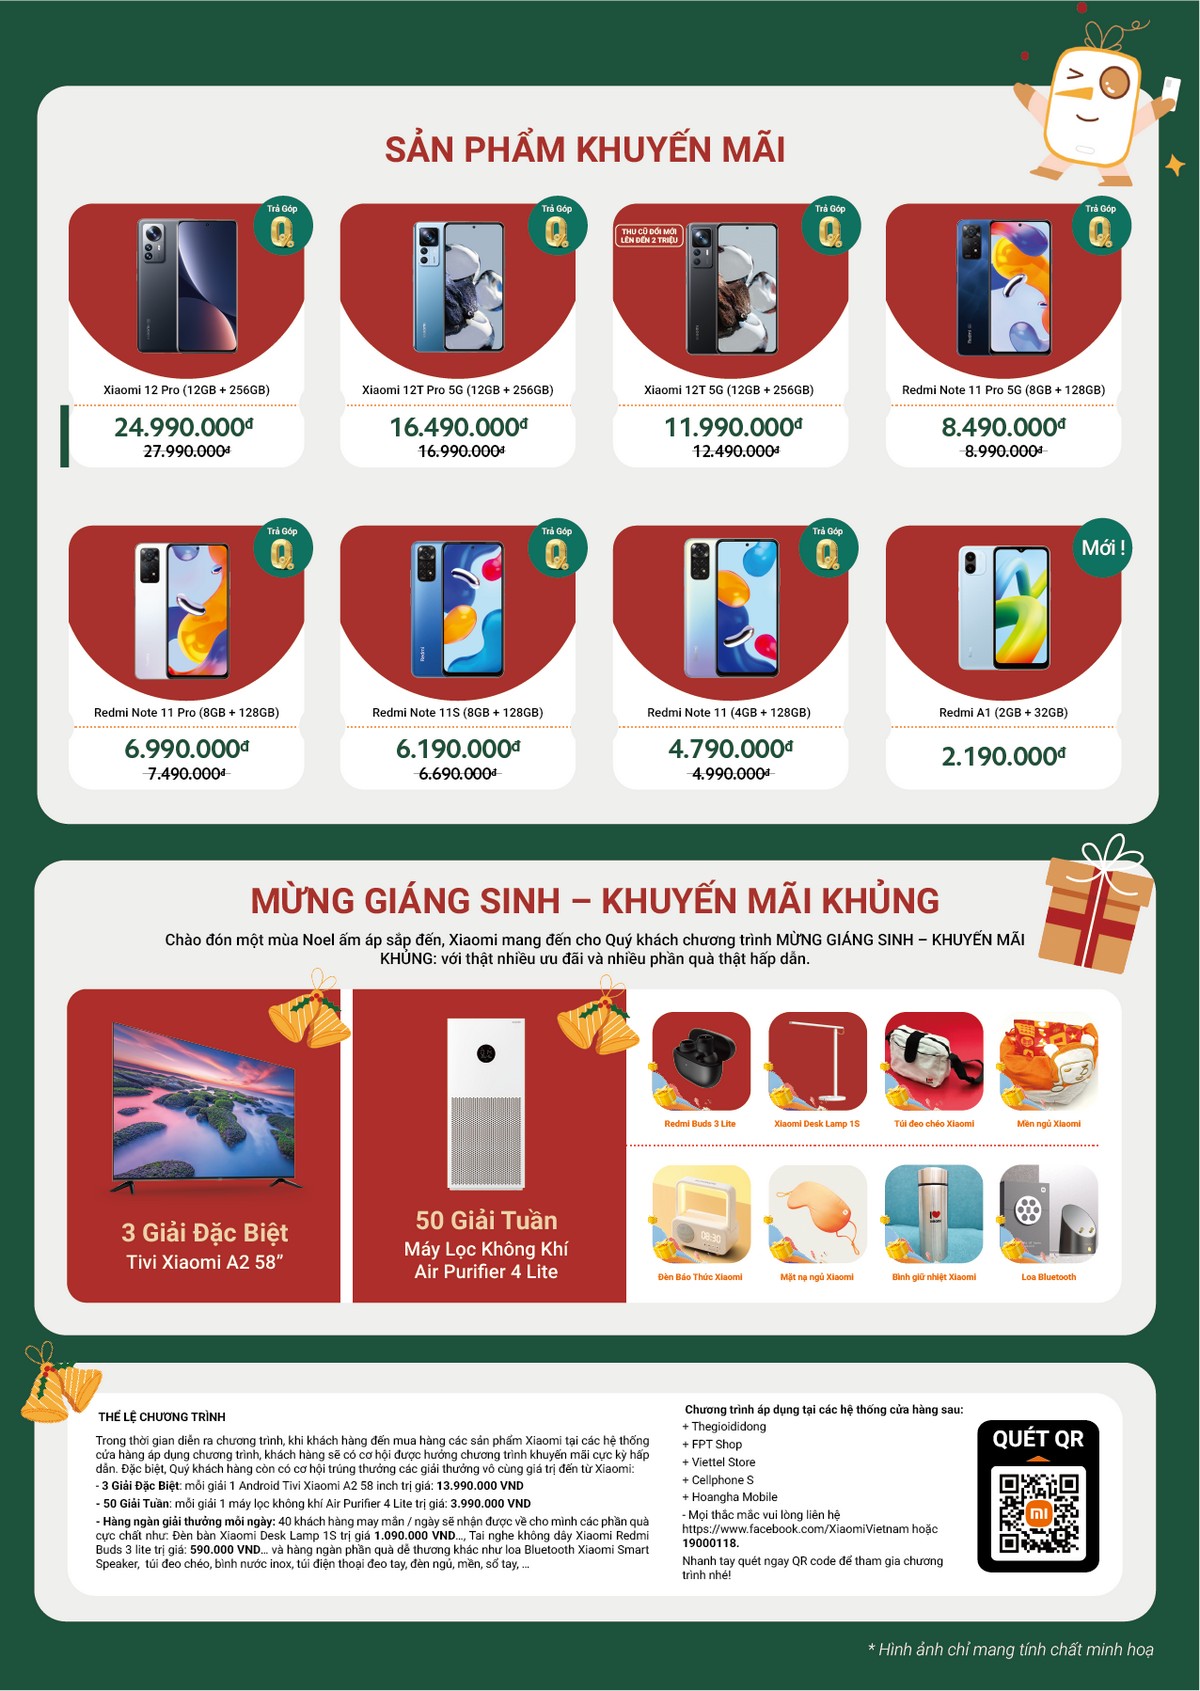 Xiaomi tung hàng loạt ưu đãi dịp cuối năm